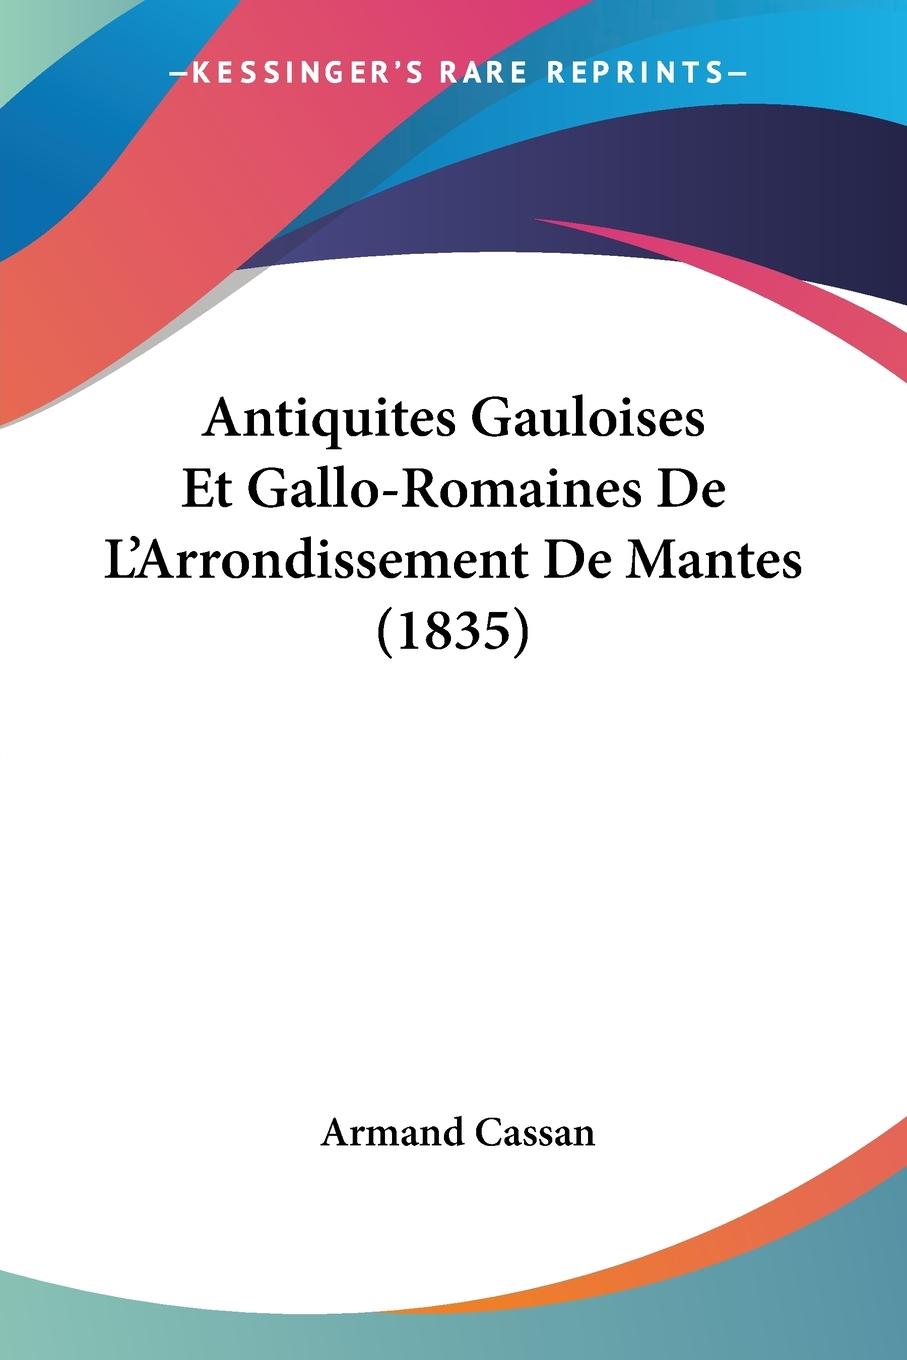 Antiquites Gauloises Et Gallo-Romaines De L Arrondissement De Mantes (1835) - Cassan, Armand